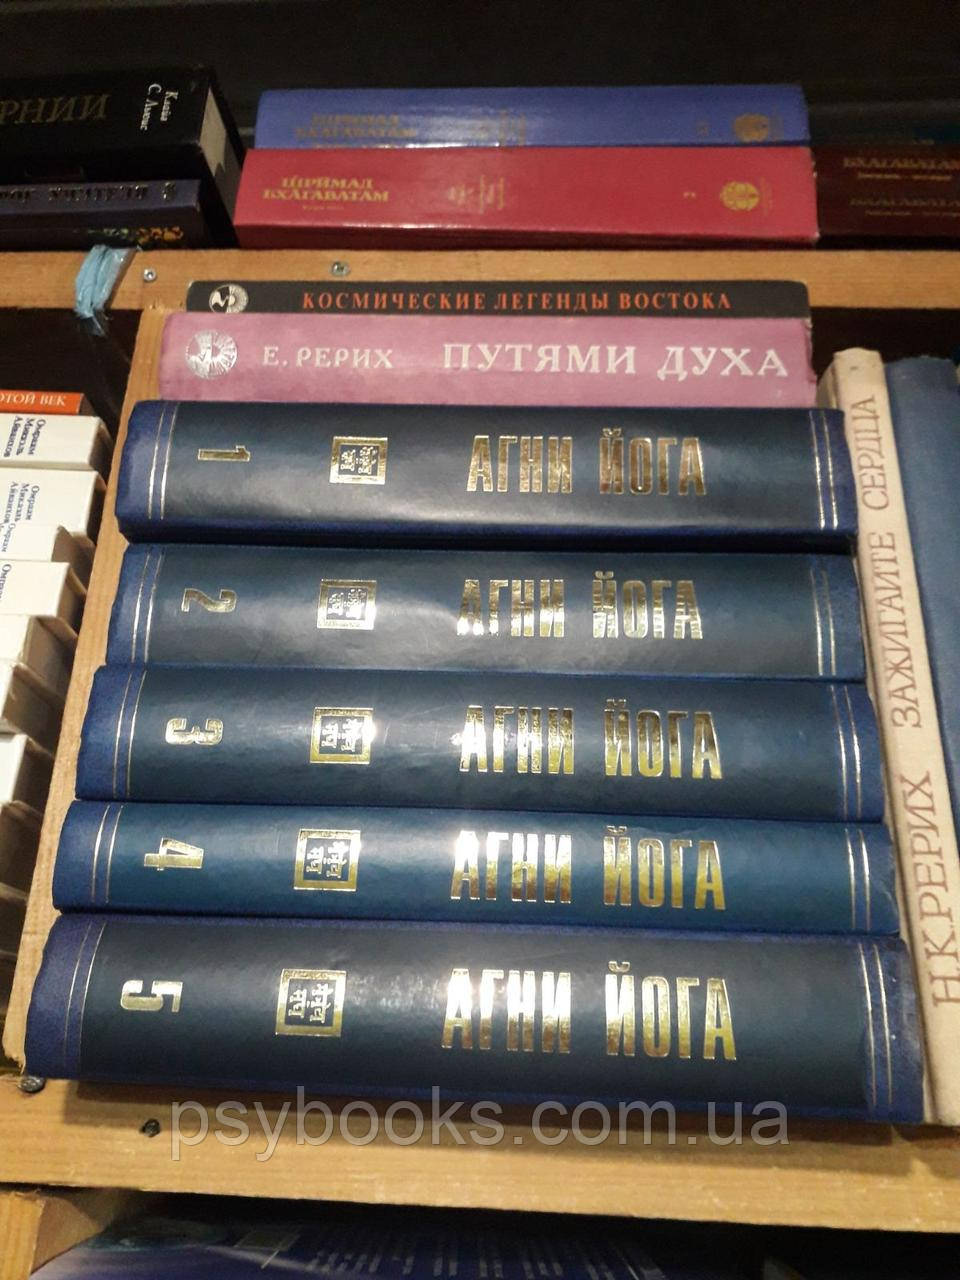 Ковальова, Н. Агні Йога: Жива етика У 5 томах Букіністика